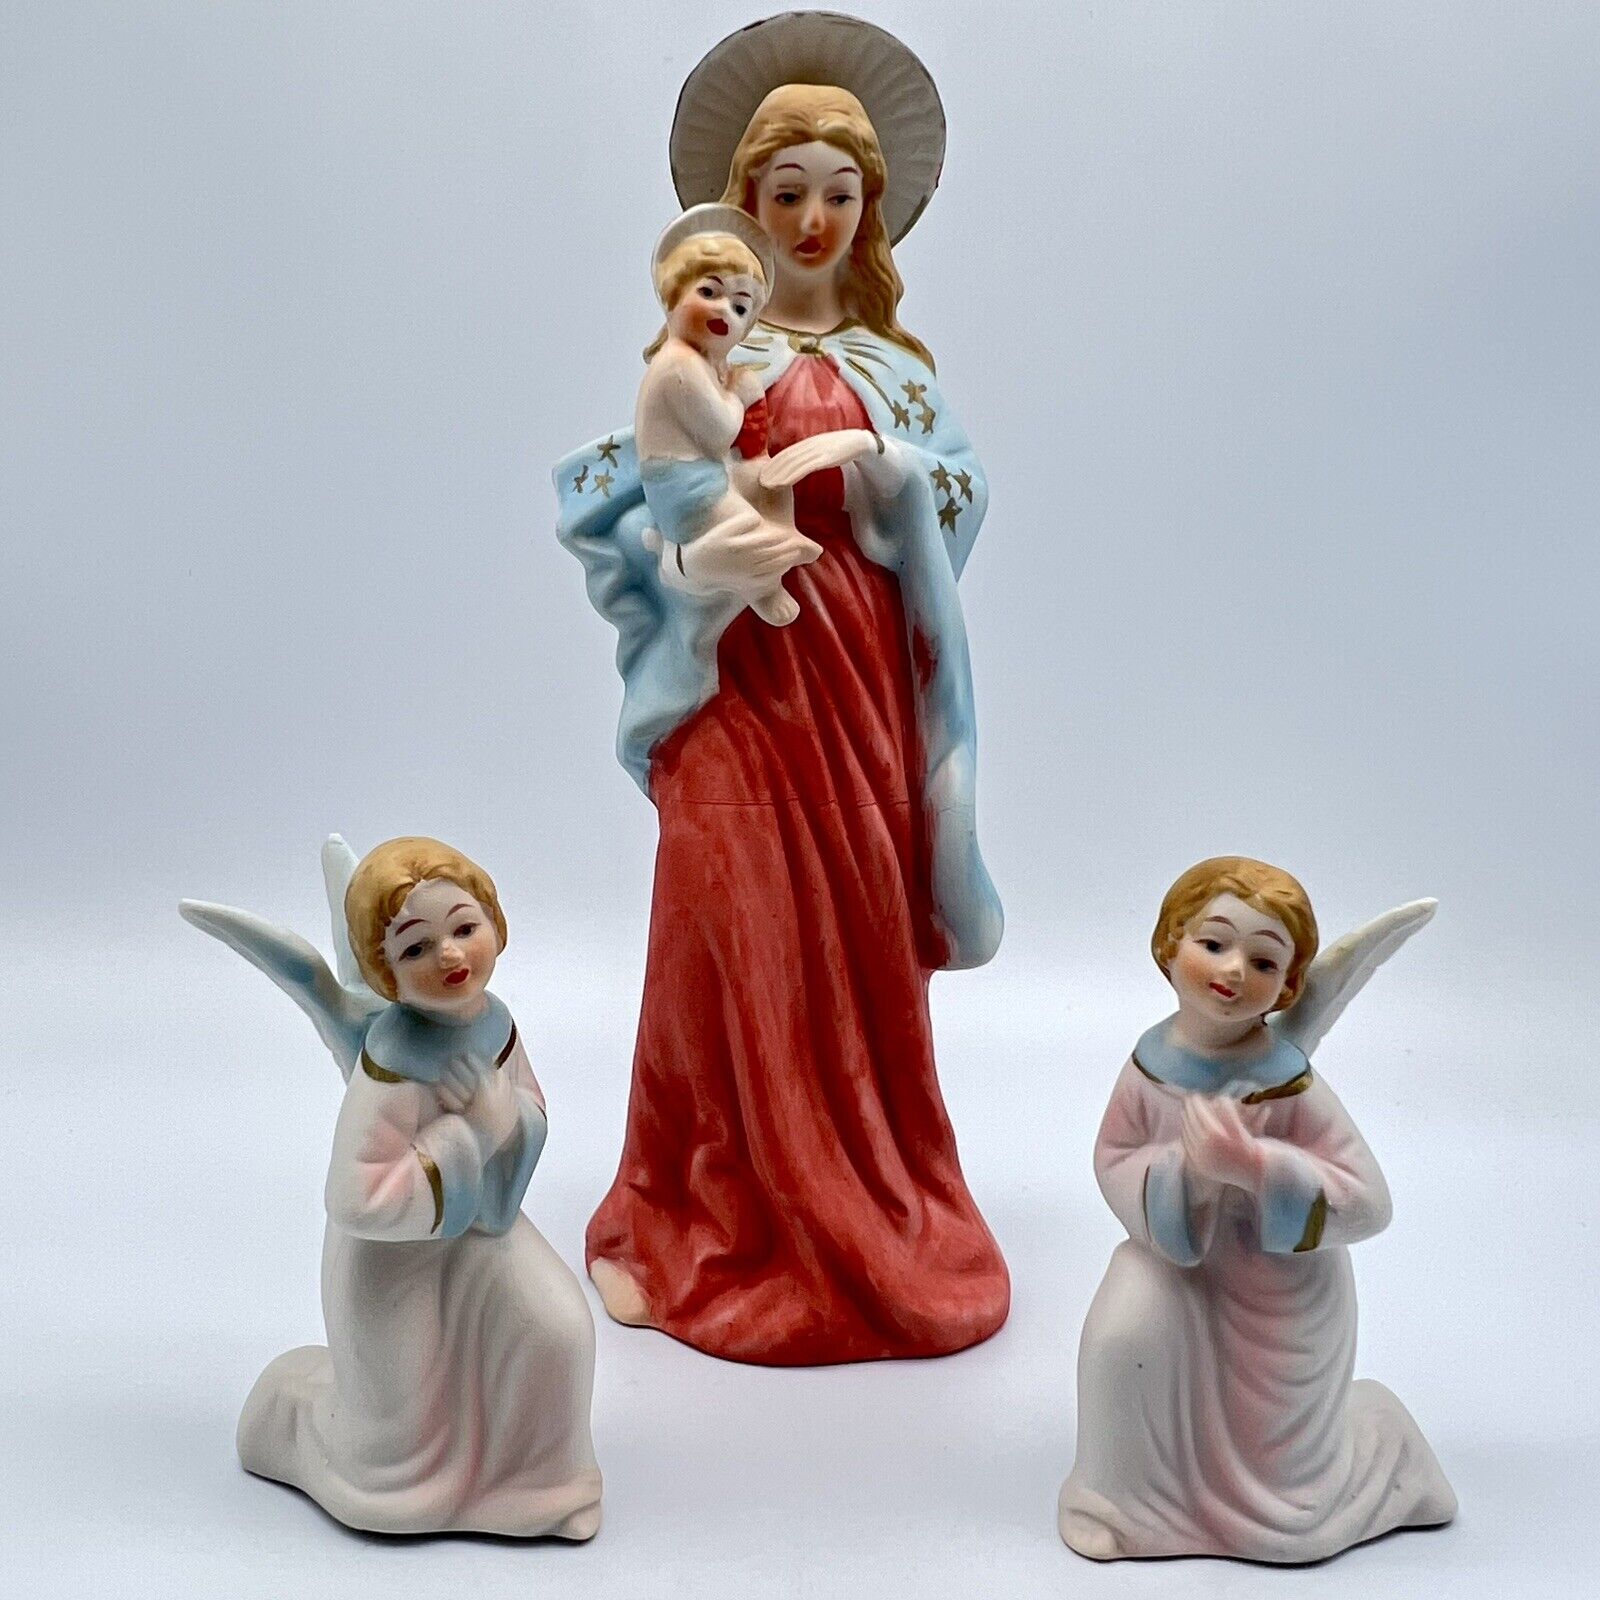 Vintage ARTMARK Madonna Mary Jesus and Angels Handpainted Figurines - Set of 2